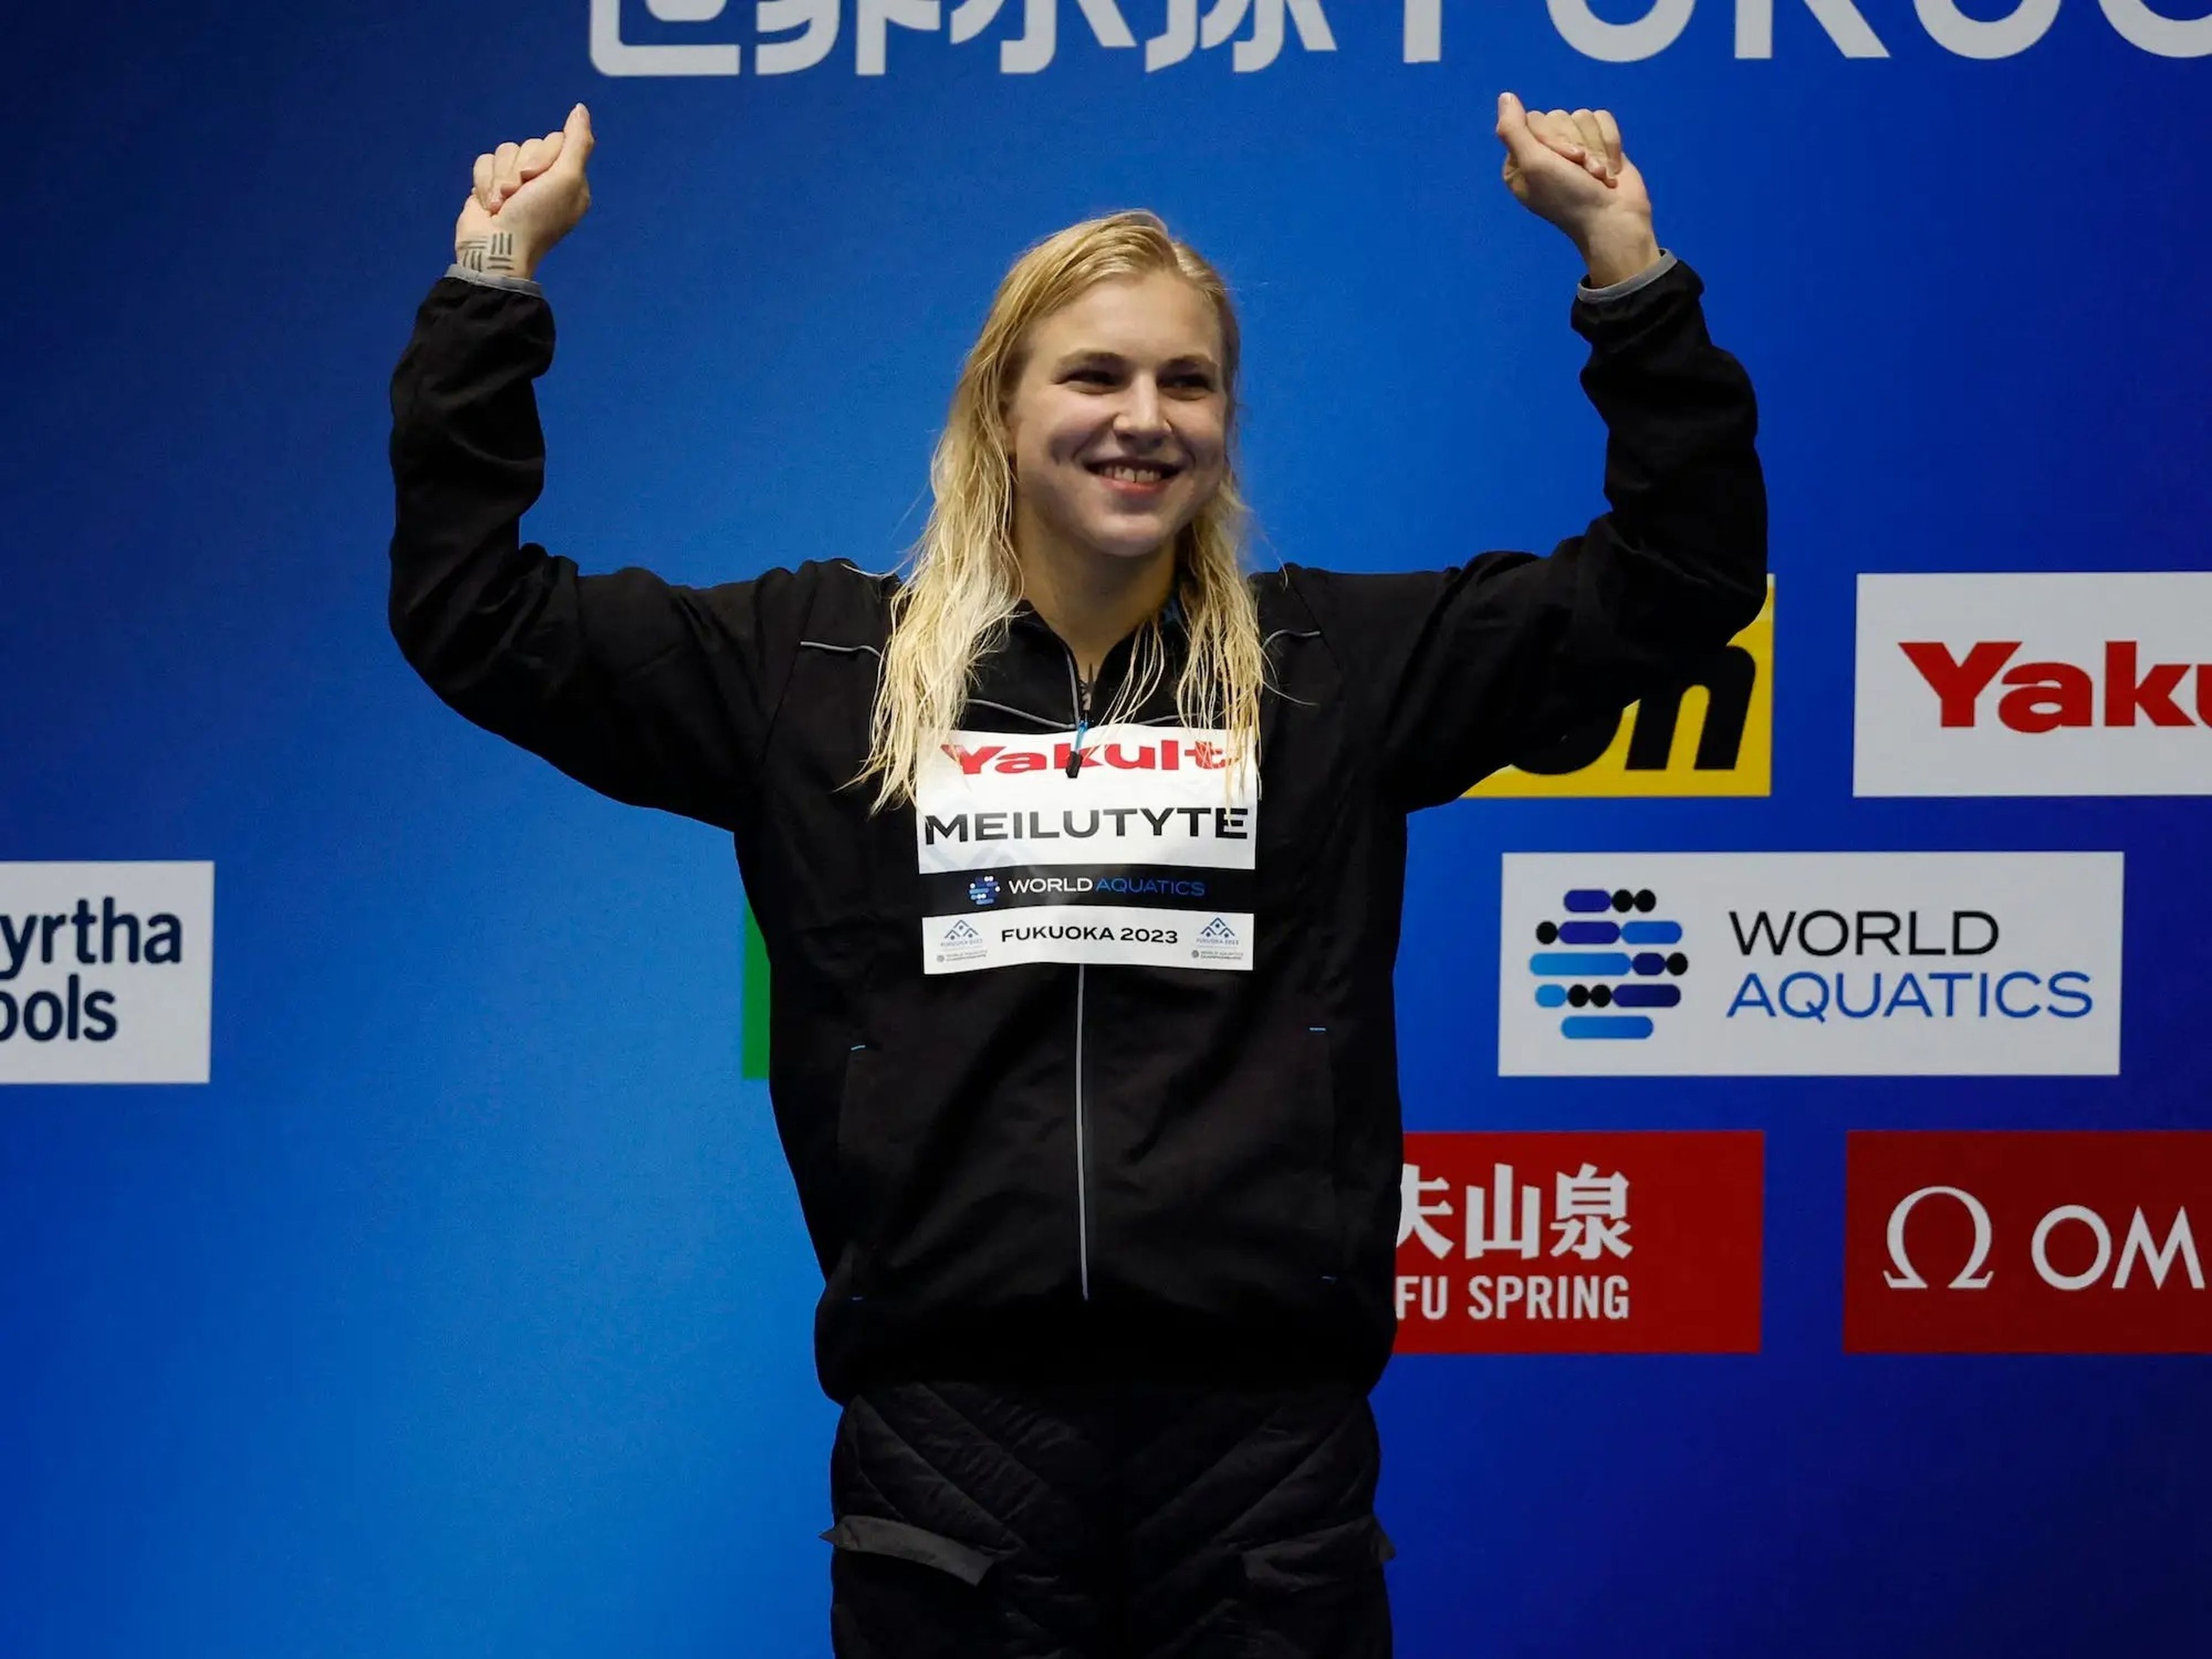 La lituana Ruta Meilutyte, ganadora de una medalla de oro olímpica, ha batido varios récords de natación.